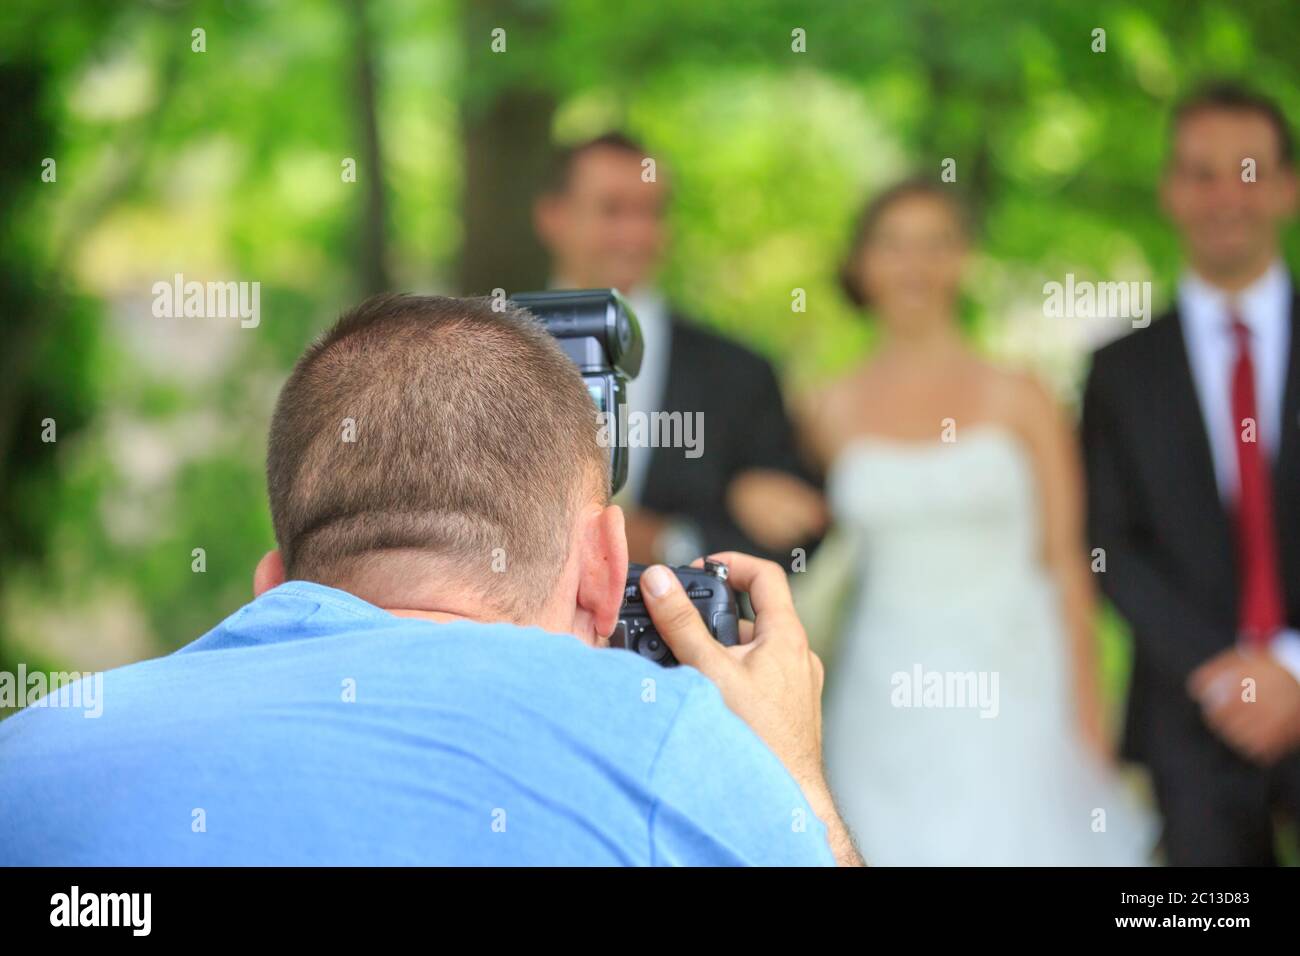 Hochzeitsfotograf in Aktion, ein Foto von Braut und Bräutigam Stockfoto